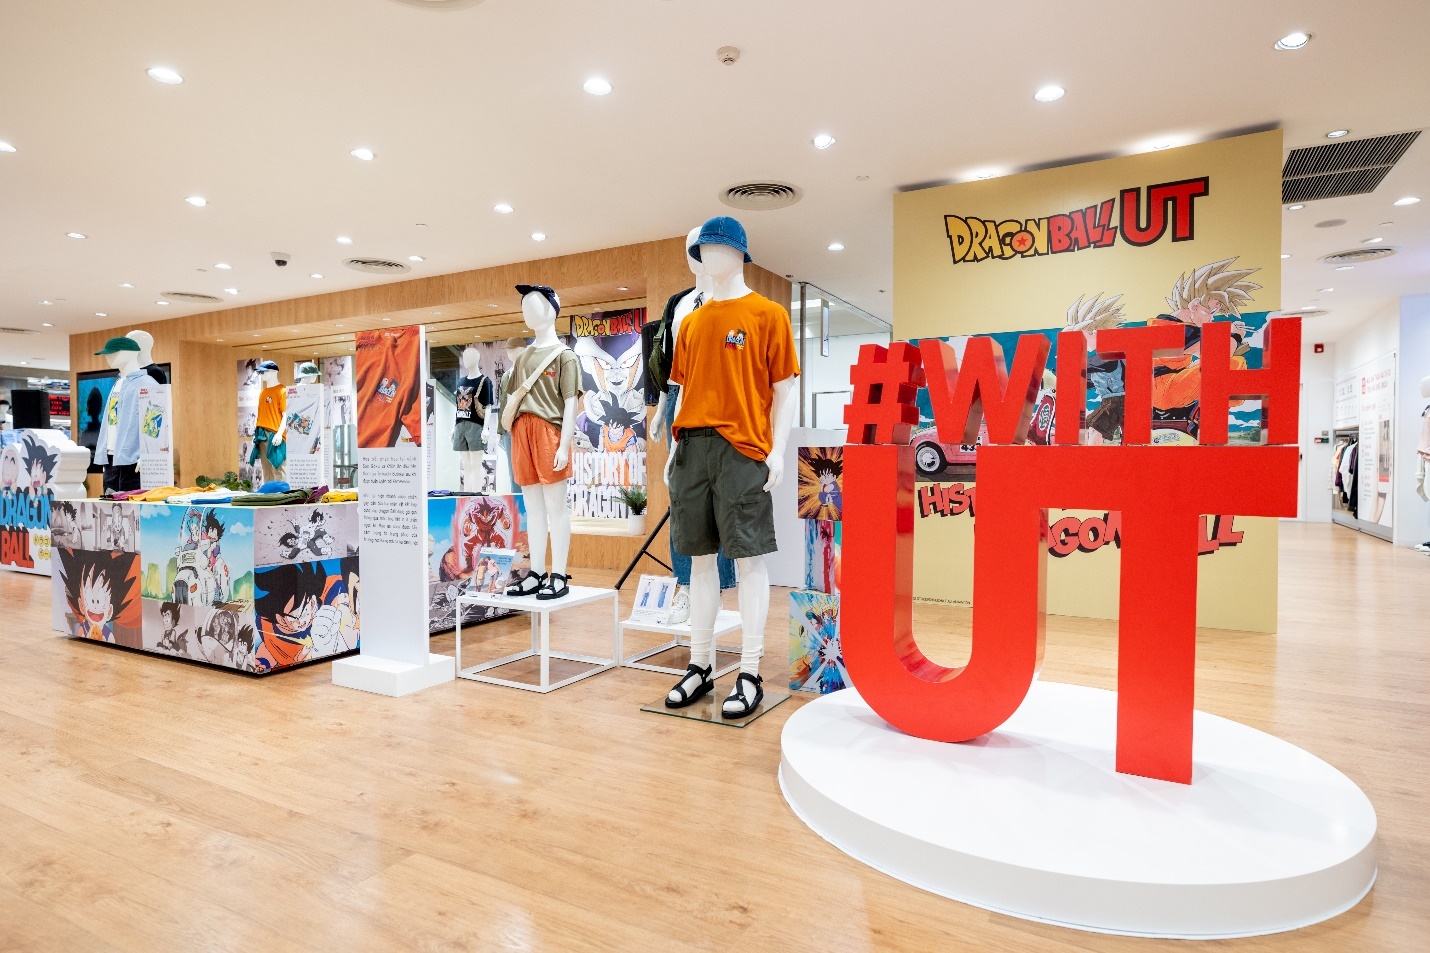 Uniqlo mở cửa hàng đầu tiên tại Việt Nam vào năm 2019